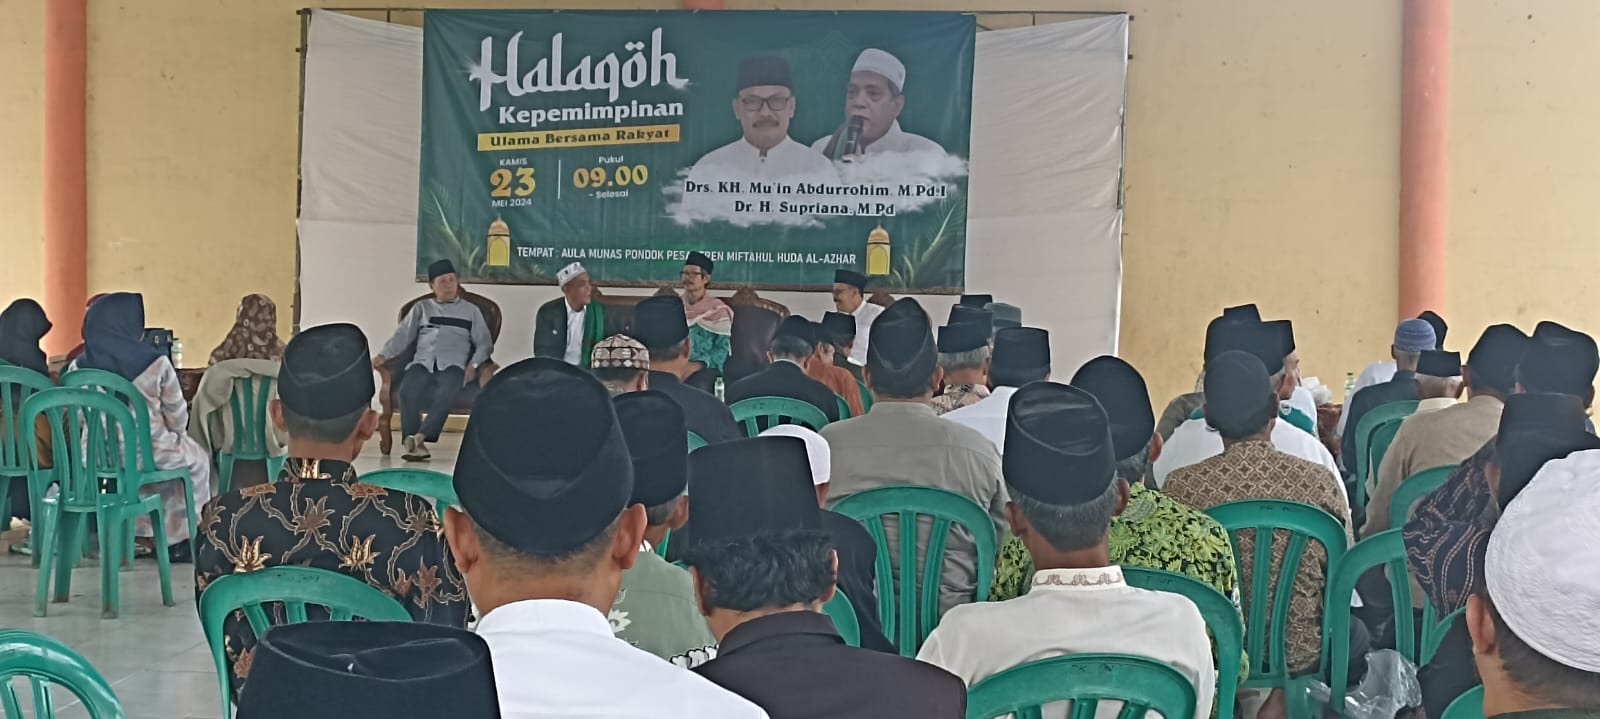 Para tokoh ulama di Kota Banjar berdiskusi untuk mencari sosok figur pemimoin daerah yang ideal, di Miftahul Huda Al Azhar, Citangkolo, Kota Banjar, Jawa Barat. (istimewa)